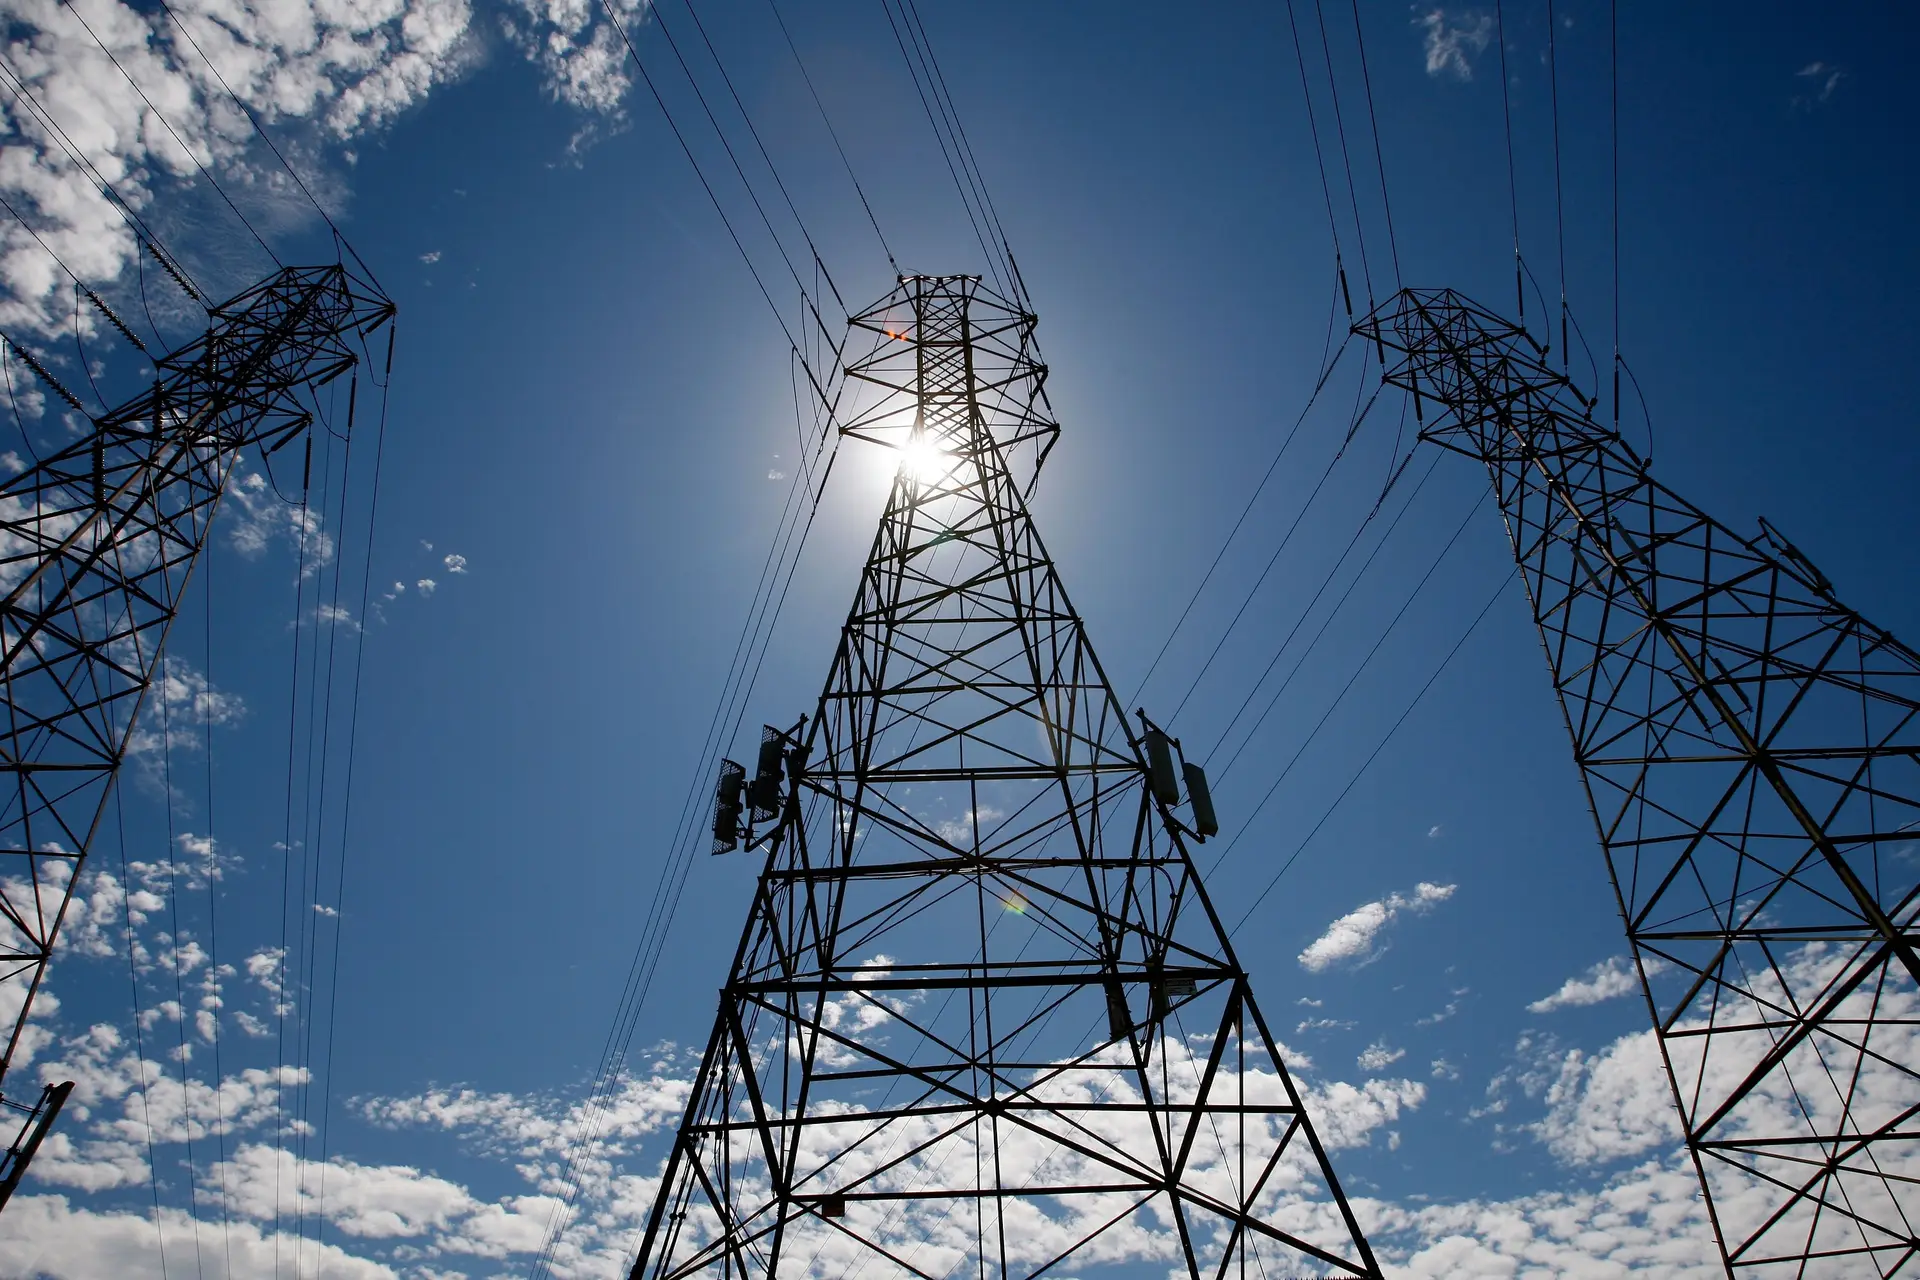 PRR terá 100 milhões de euros para subsidiar baterias e estudar flexibilidade da rede elétrica